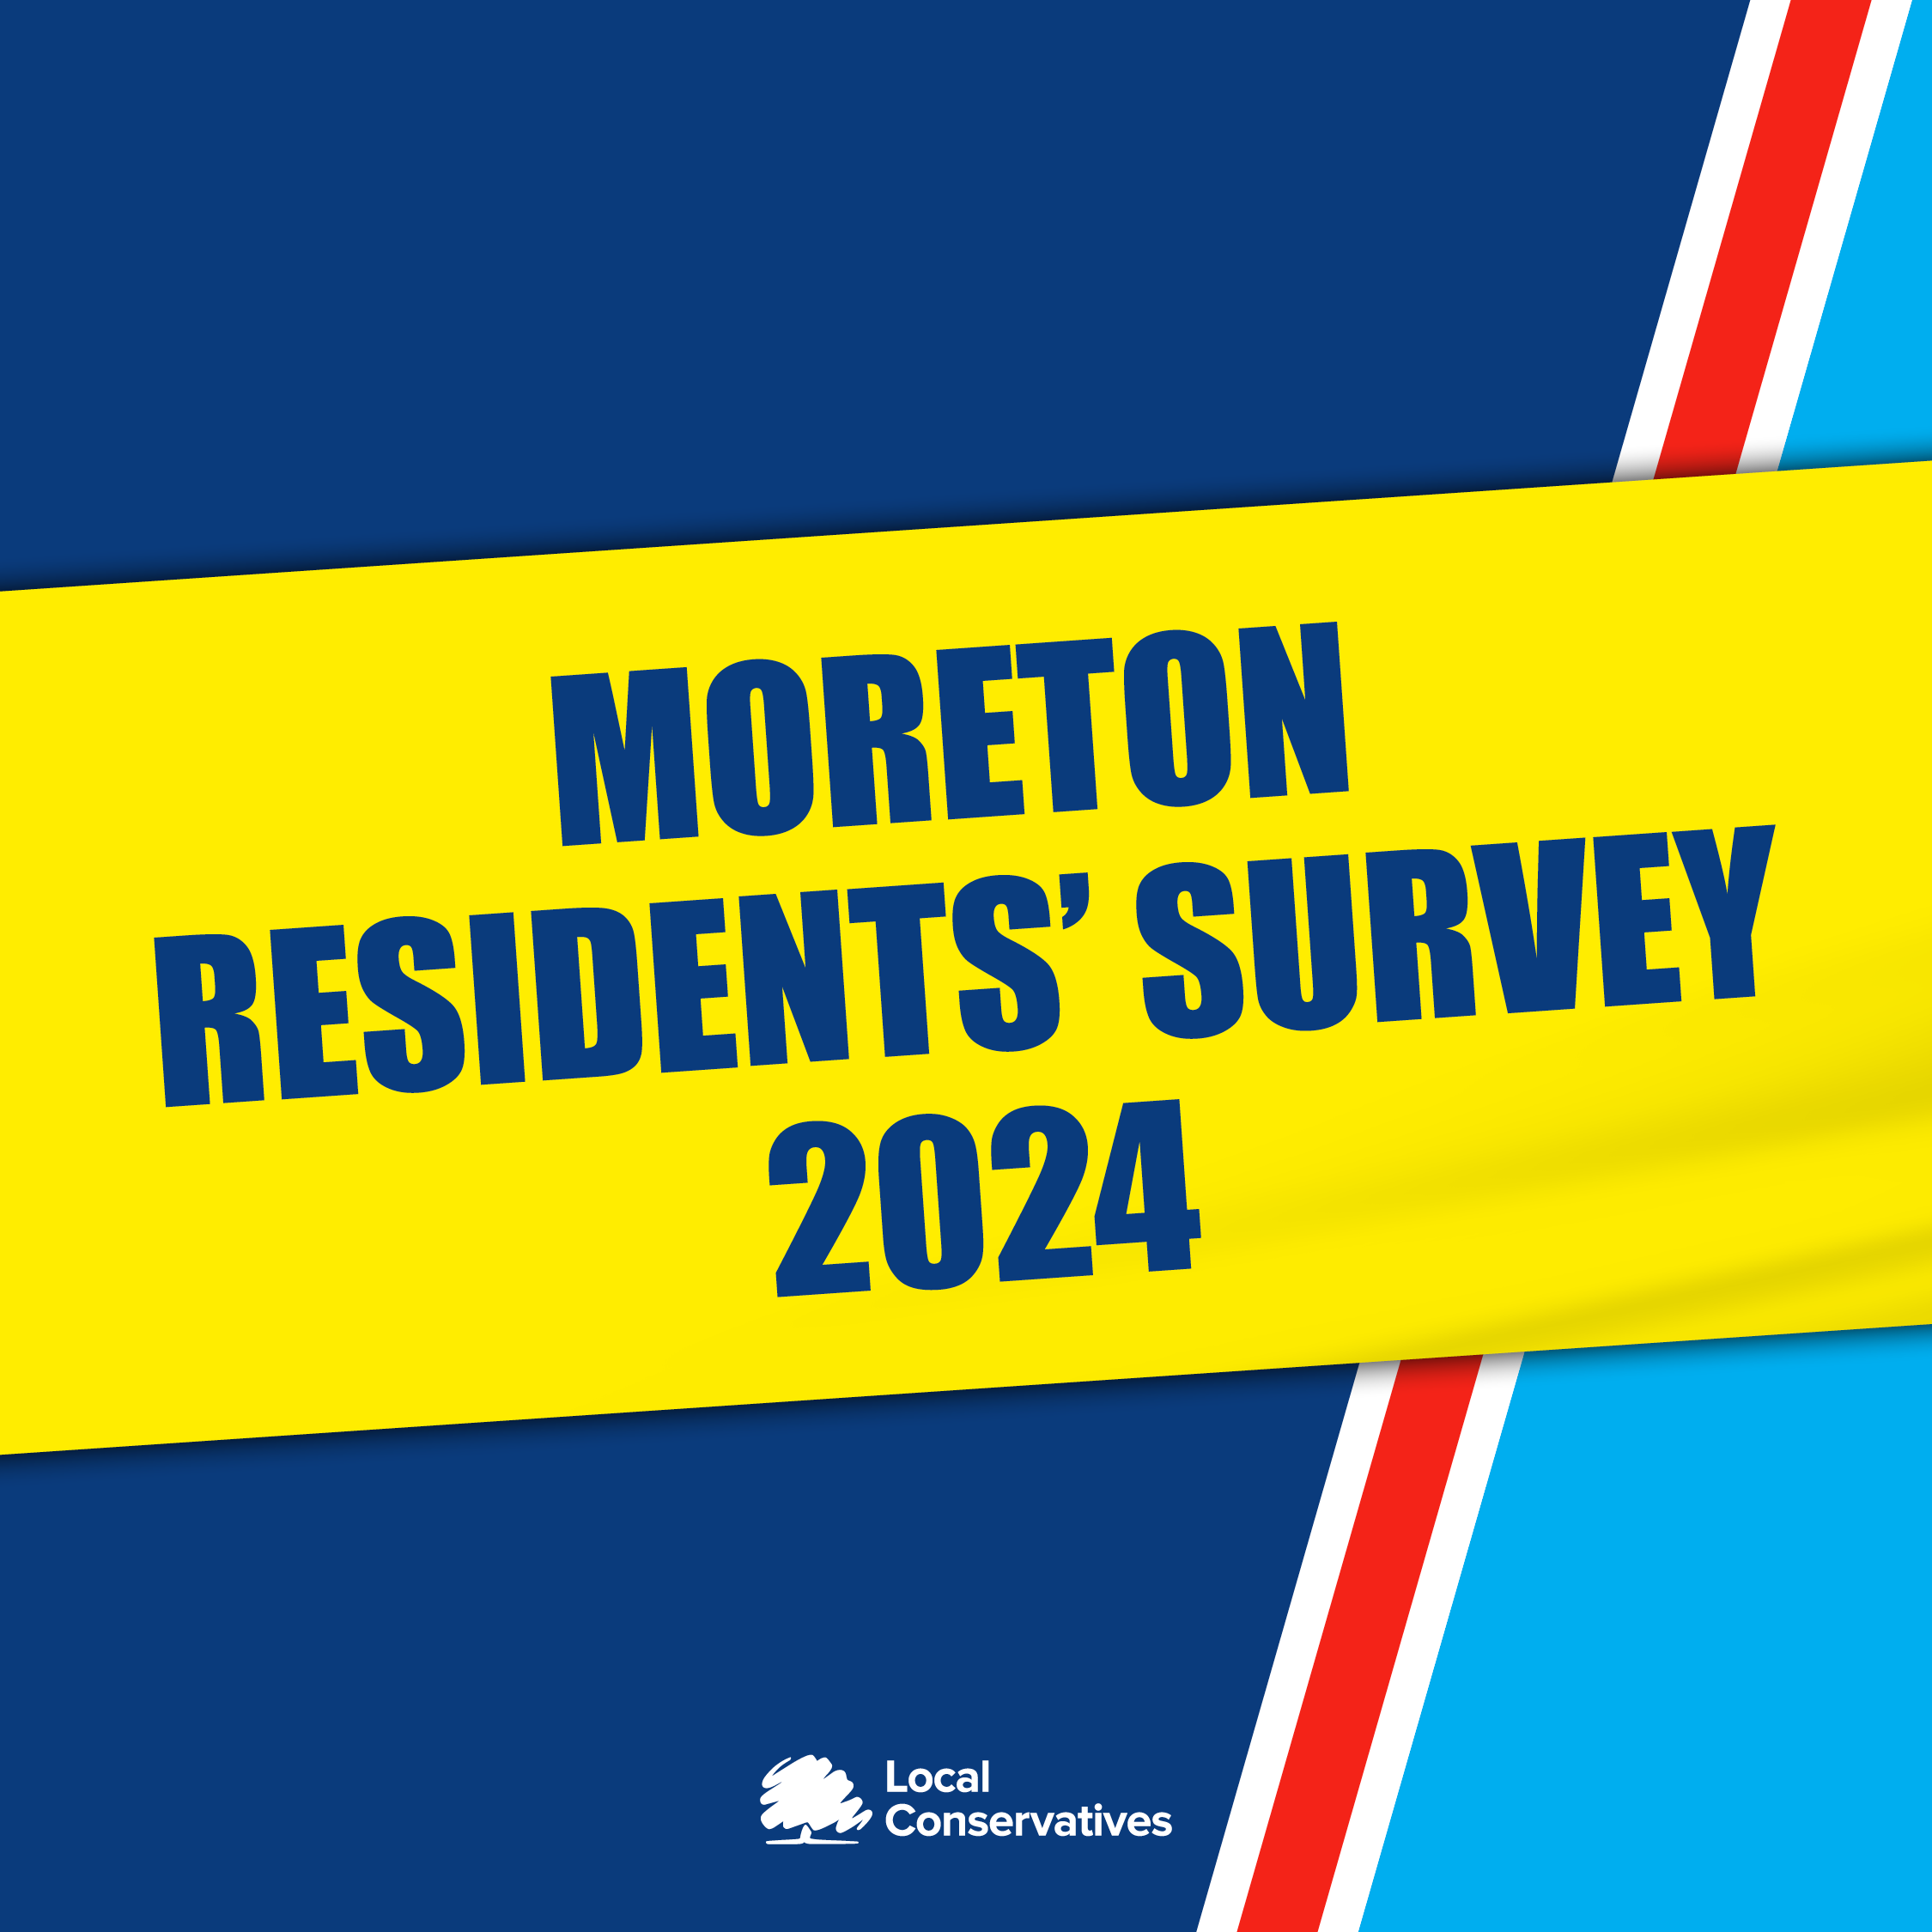 Residents' survey